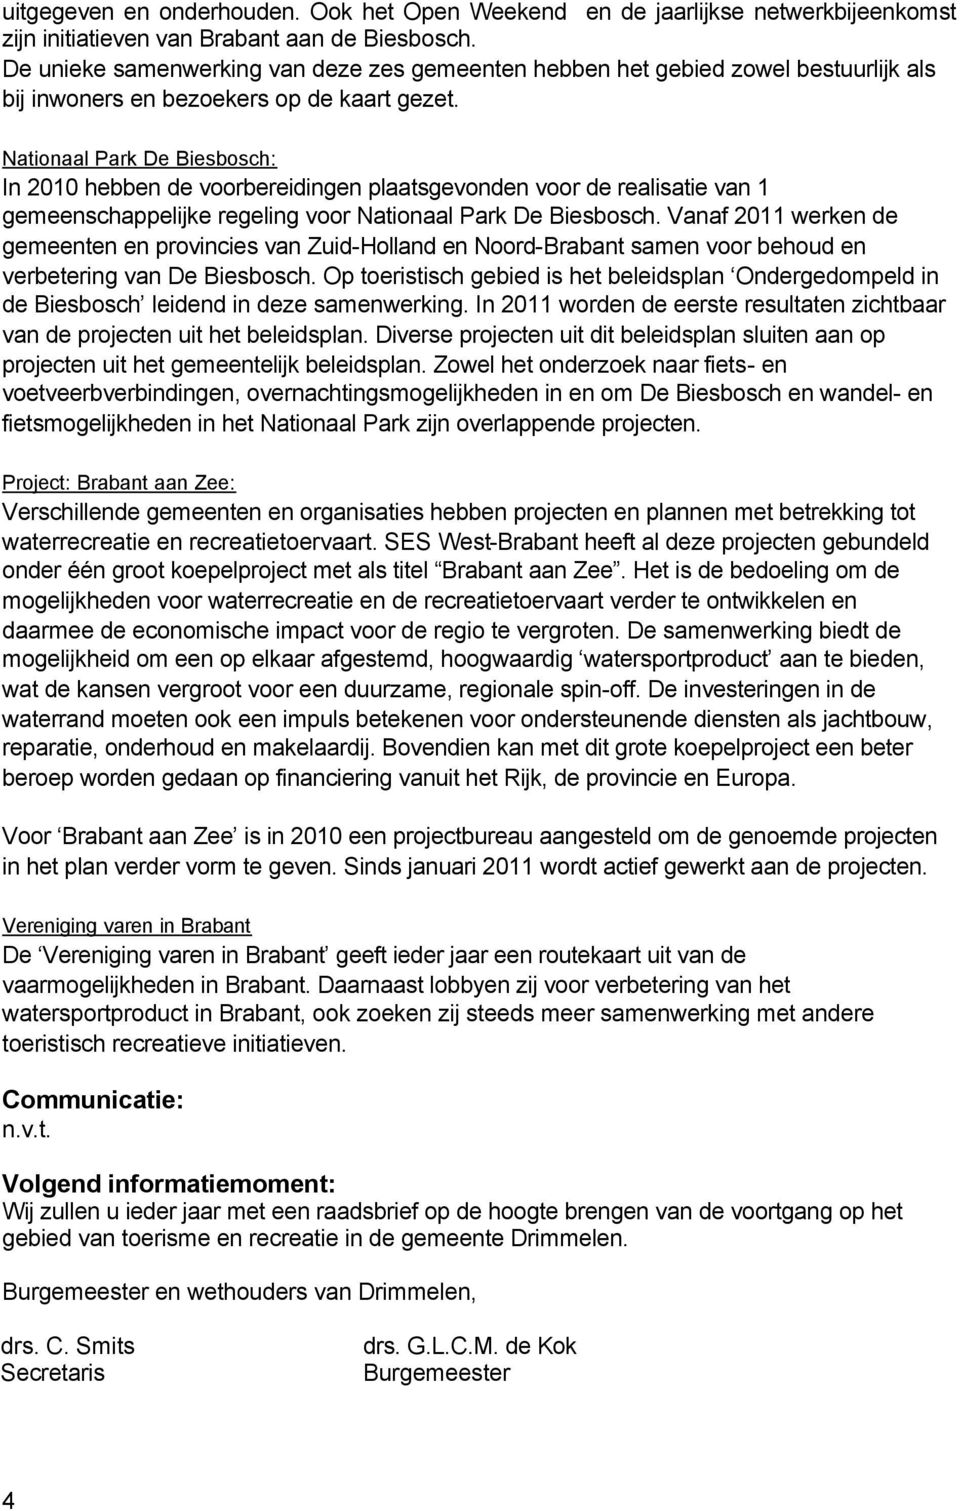 Nationaal Park De Biesbosch: In 2010 hebben de voorbereidingen plaatsgevonden voor de realisatie van 1 gemeenschappelijke regeling voor Nationaal Park De Biesbosch.